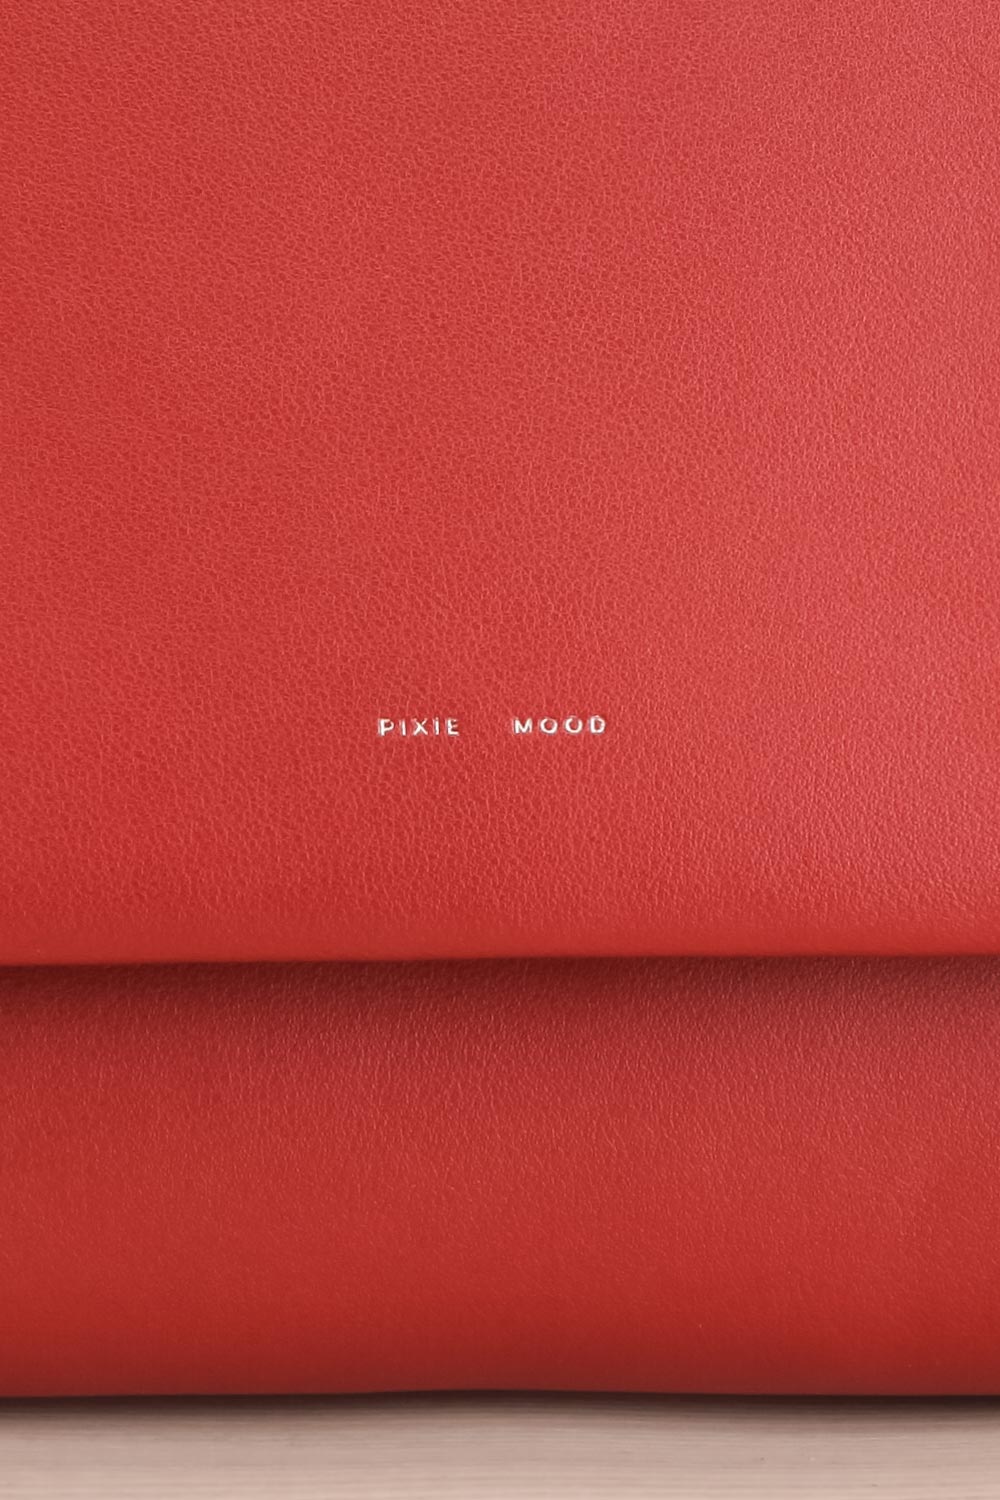 Jodith Red Faux-Leather Pixie Mood Handbag front close-up | La Petite Garçonne